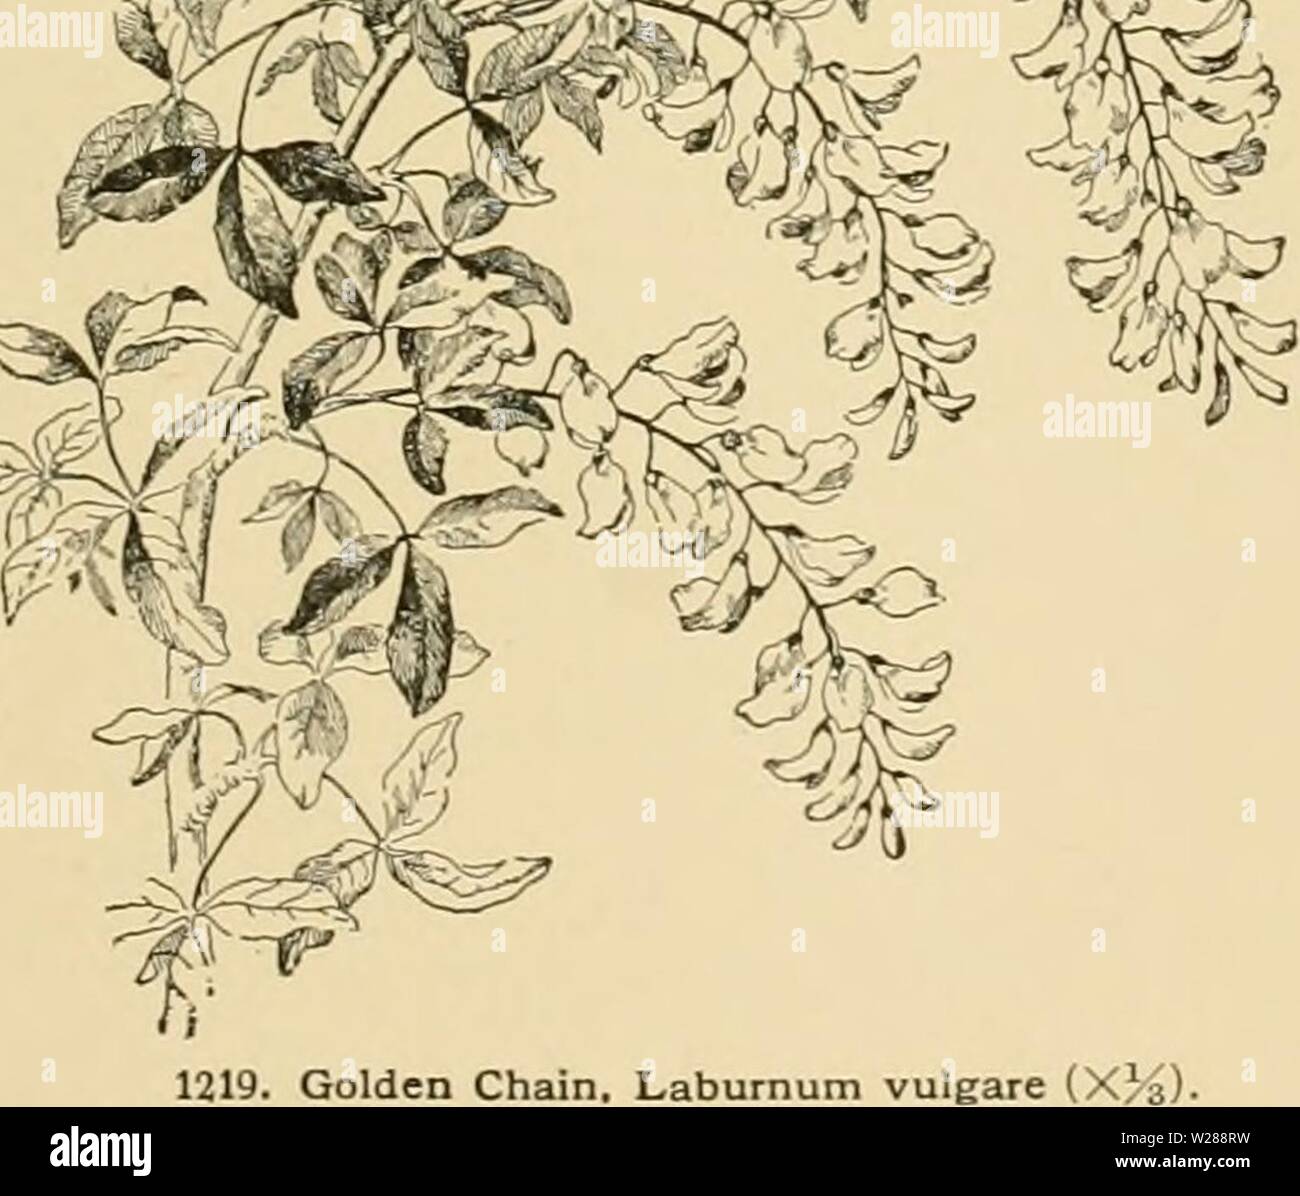 Imagen de archivo de la página 388 de la Cyclopedia de horticultura americana Foto de stock